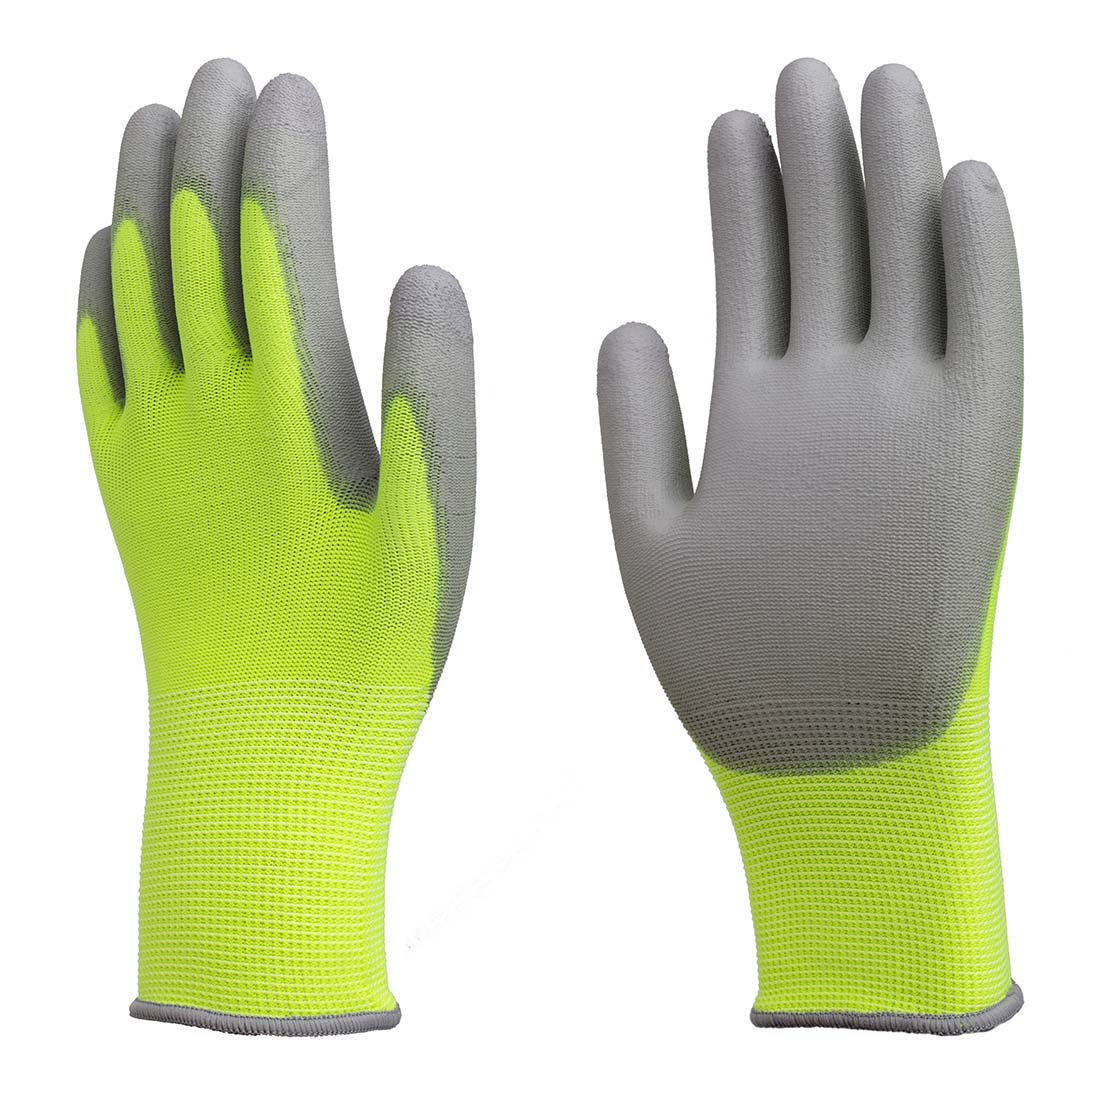 13G nylon PU gloves | Nylon PU gloves | PU gloves